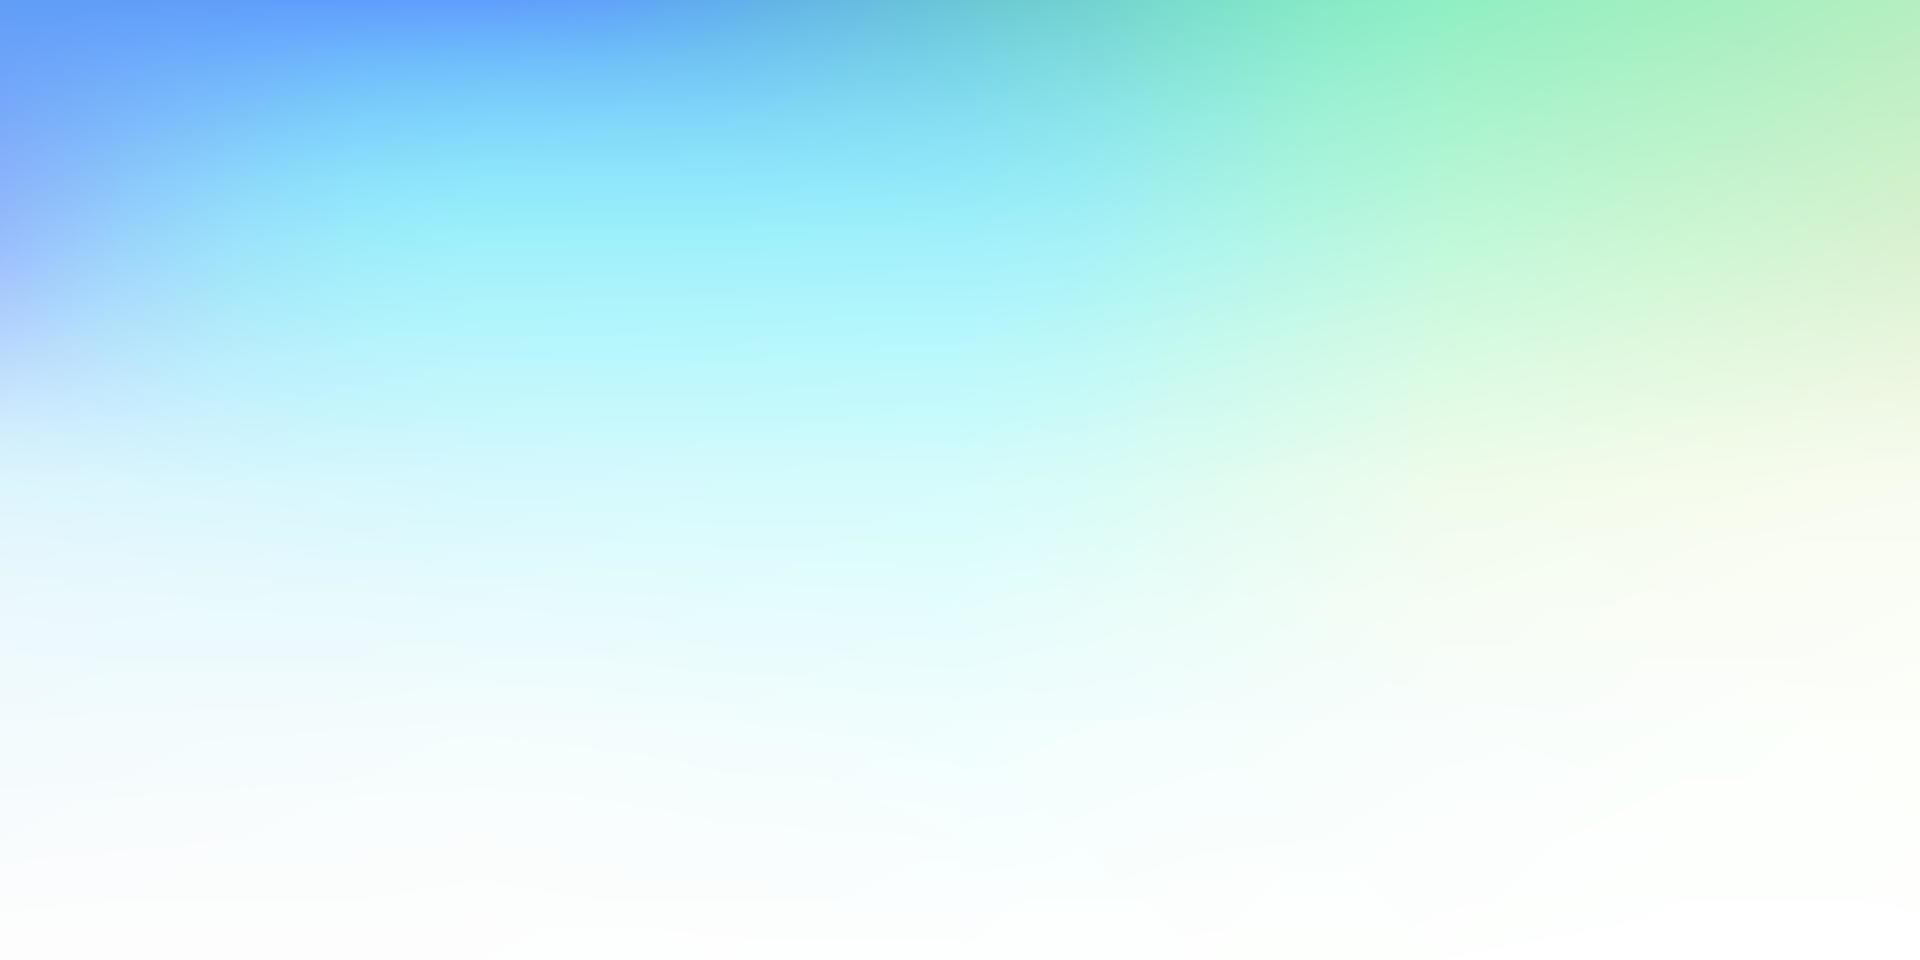 Light blue, green vector blur backdrop.